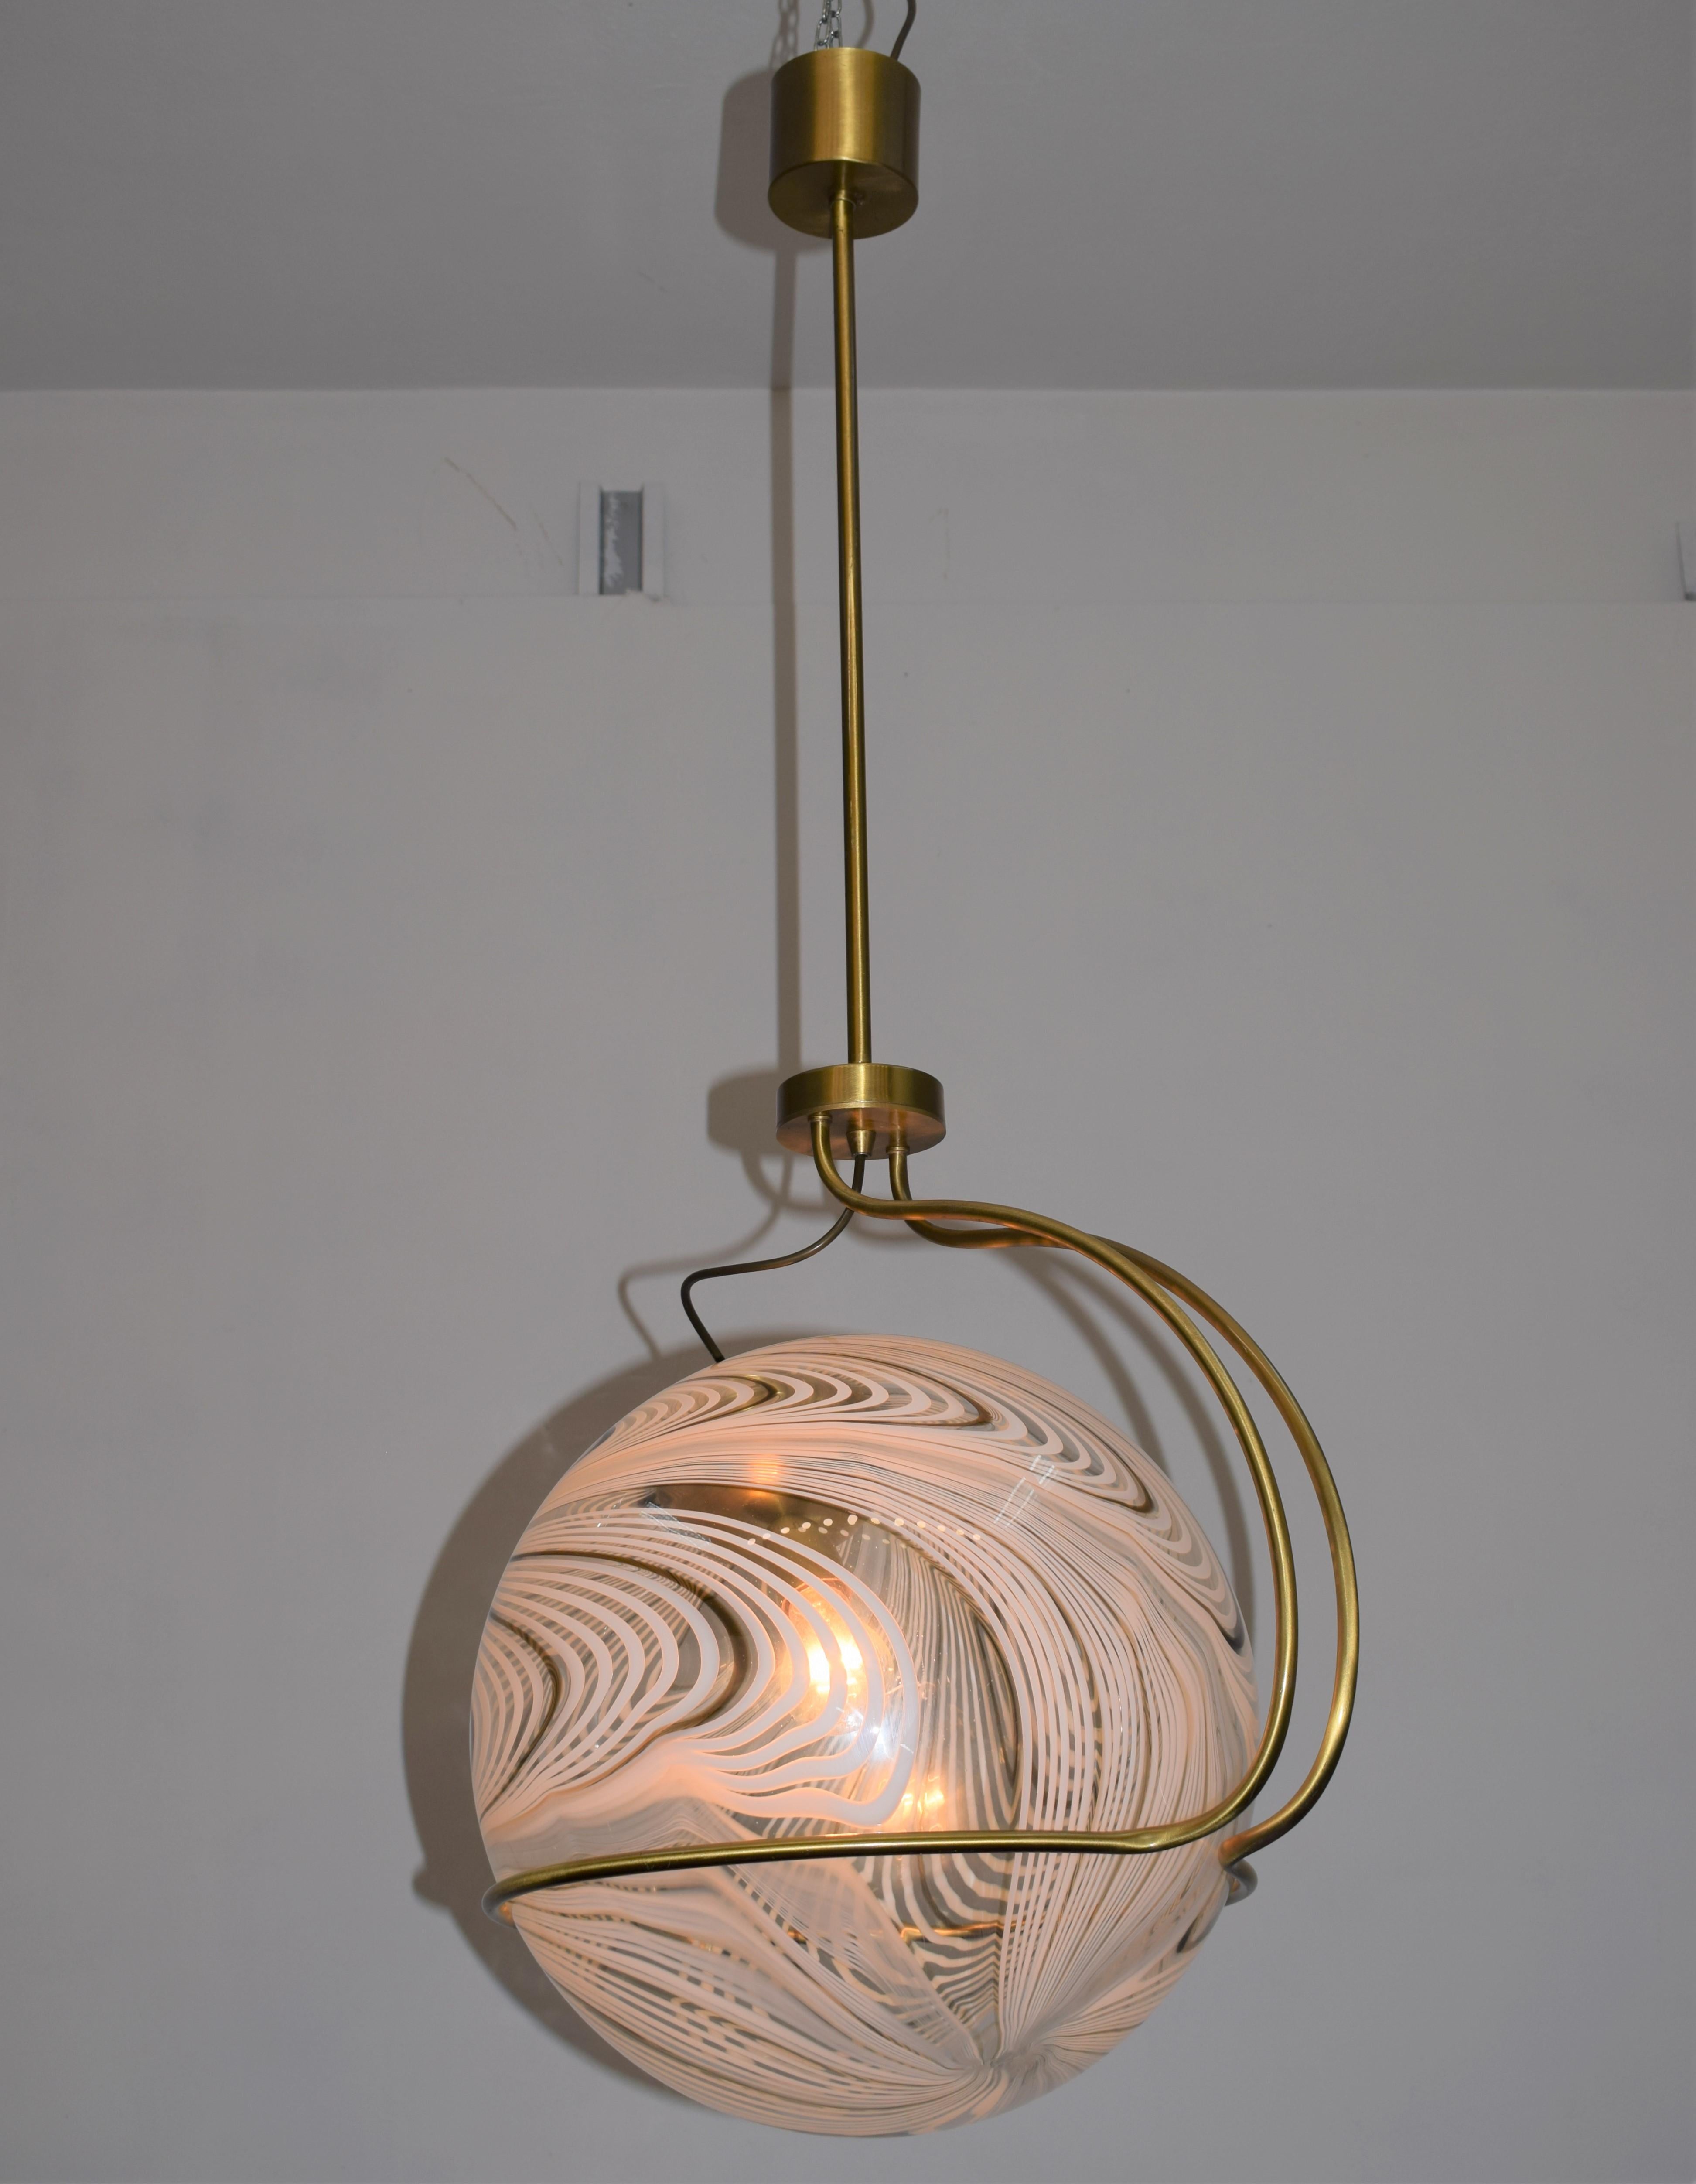 Italian chandelier by Lino Tagliapietra for La Murrina, 1970s.

Dimensions: H= 115 cm; W= 38 cm; D= 48 cm.